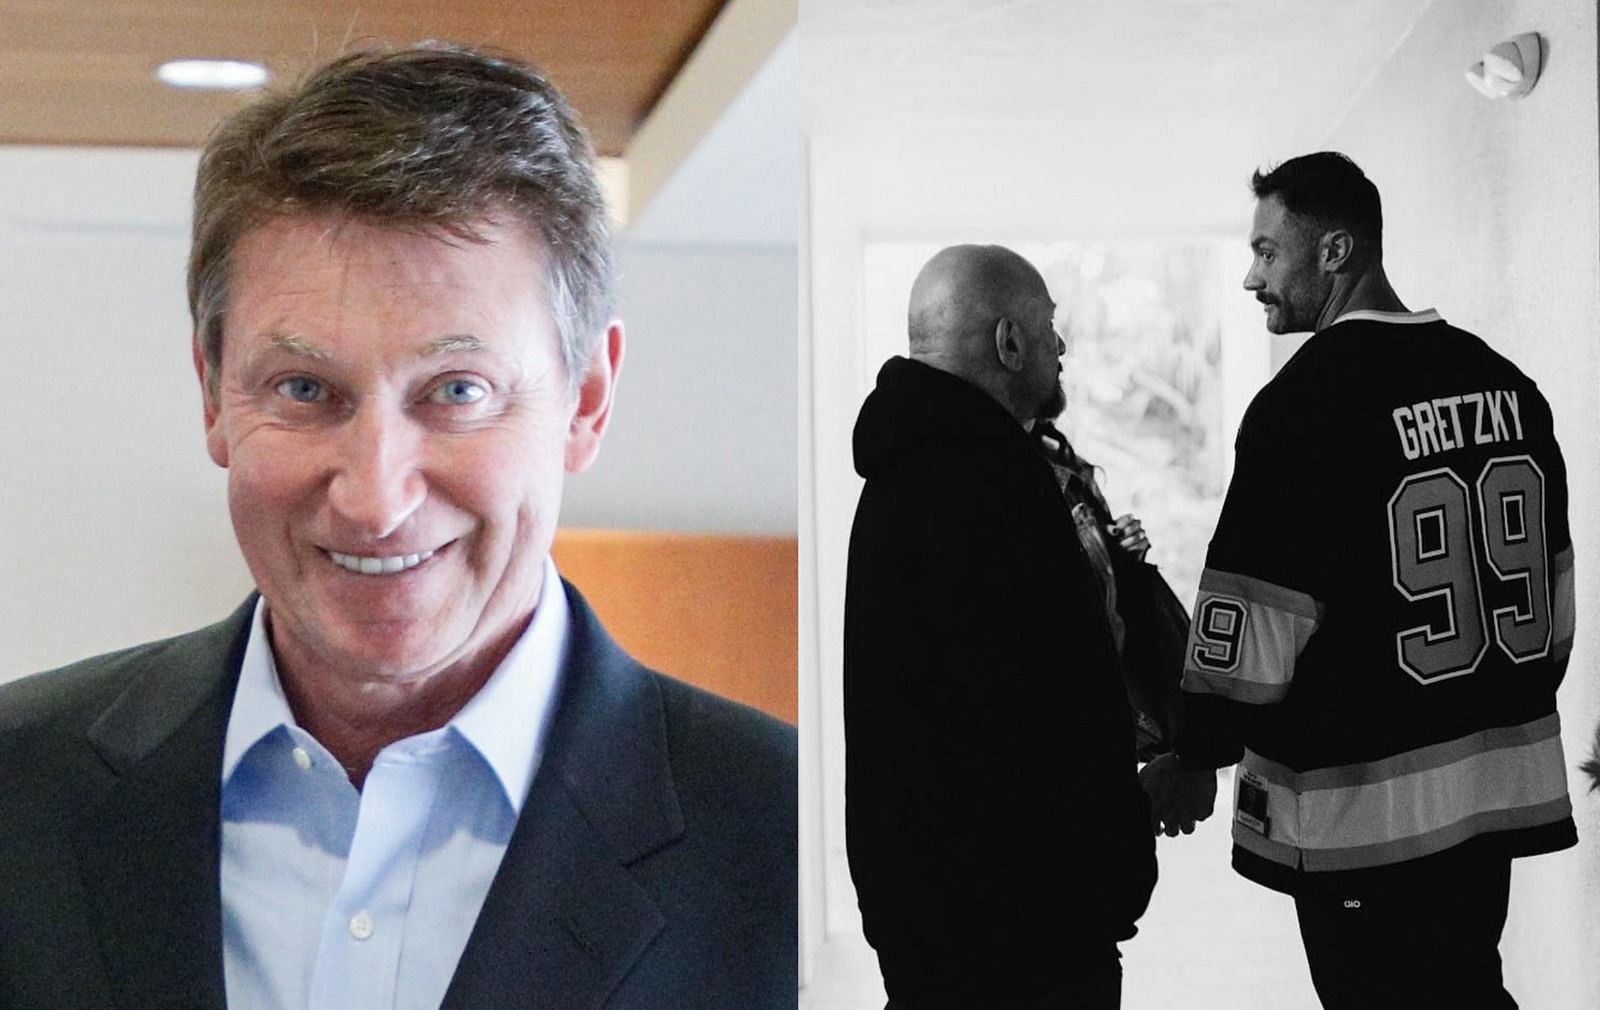 5x Mr. Olympia Chris Bumstead rocks Wayne Gretzky